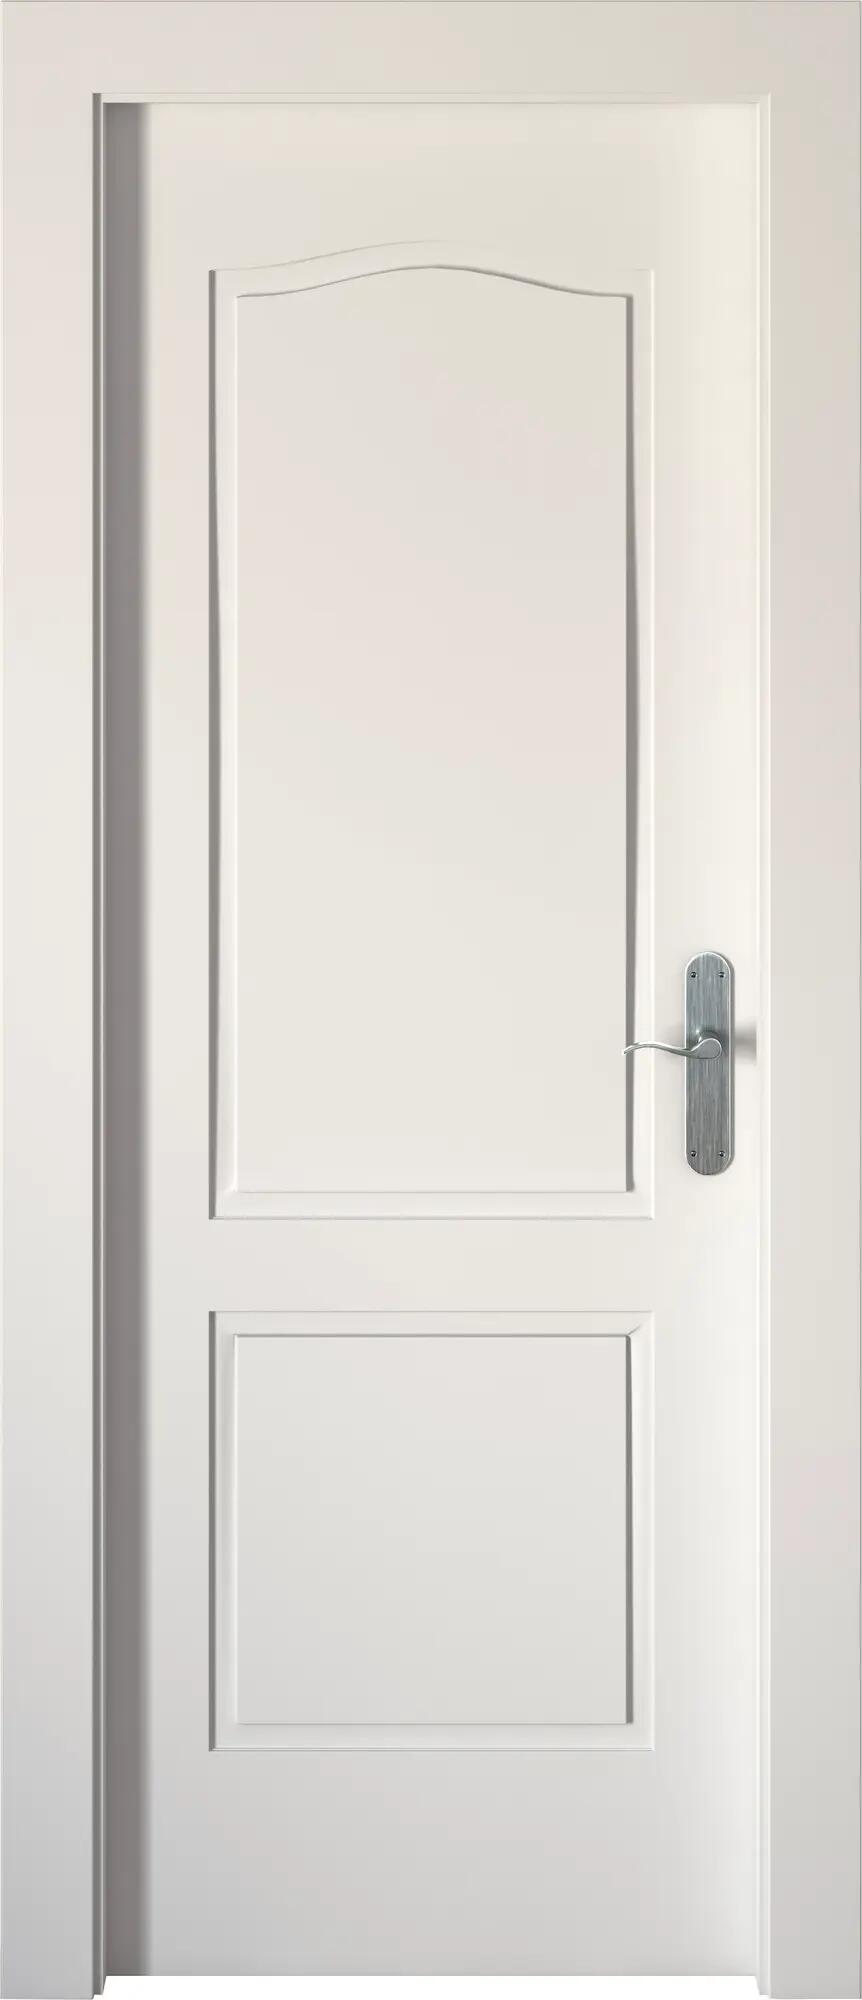 Puerta praga blanco apertura izquierda 72.5cm